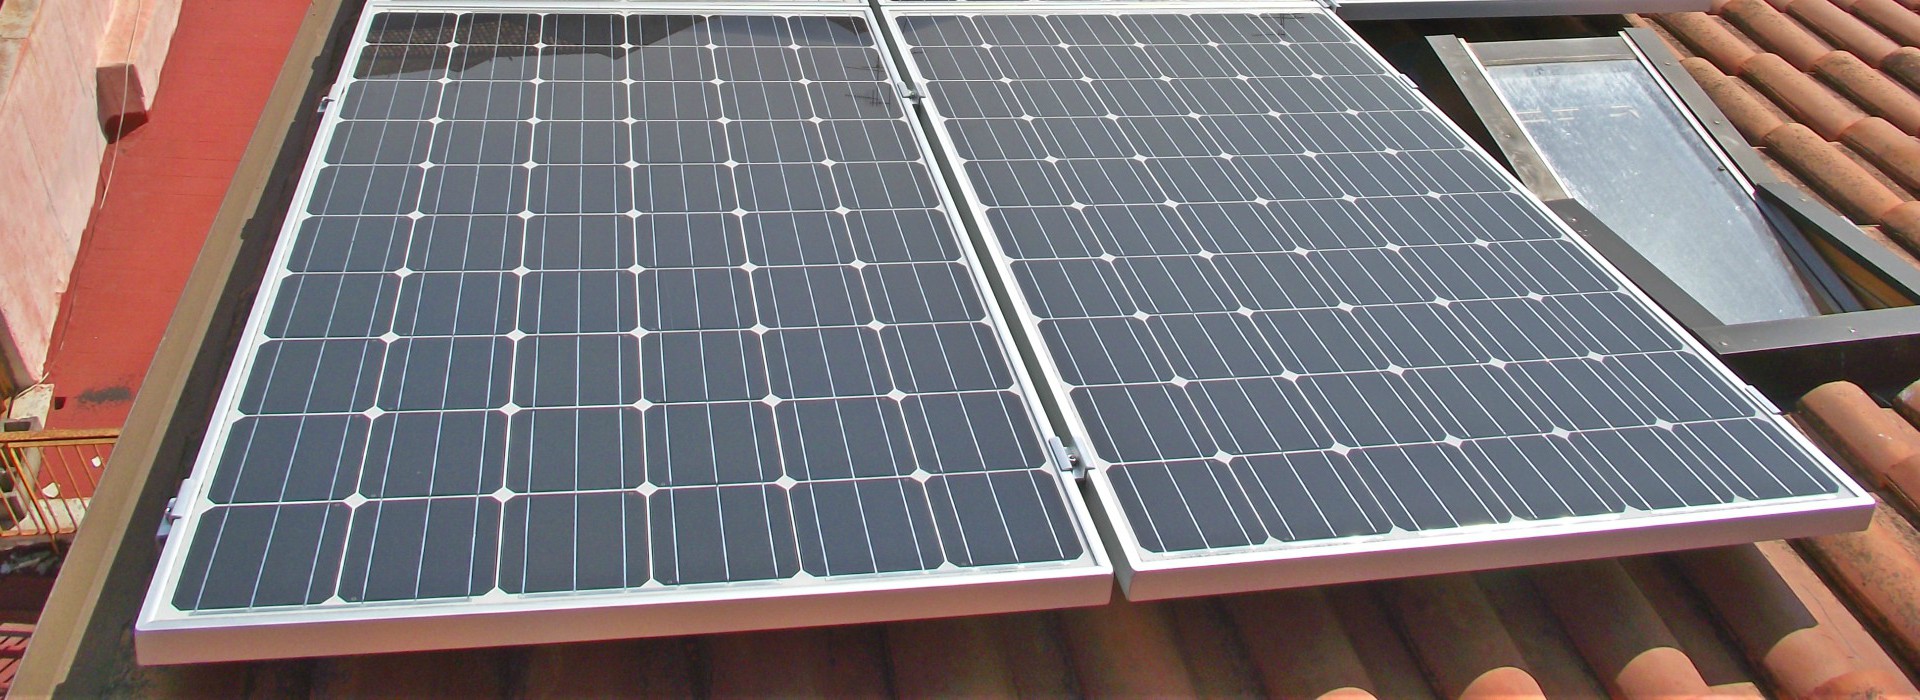 Pannelli fotovoltaici su tegole